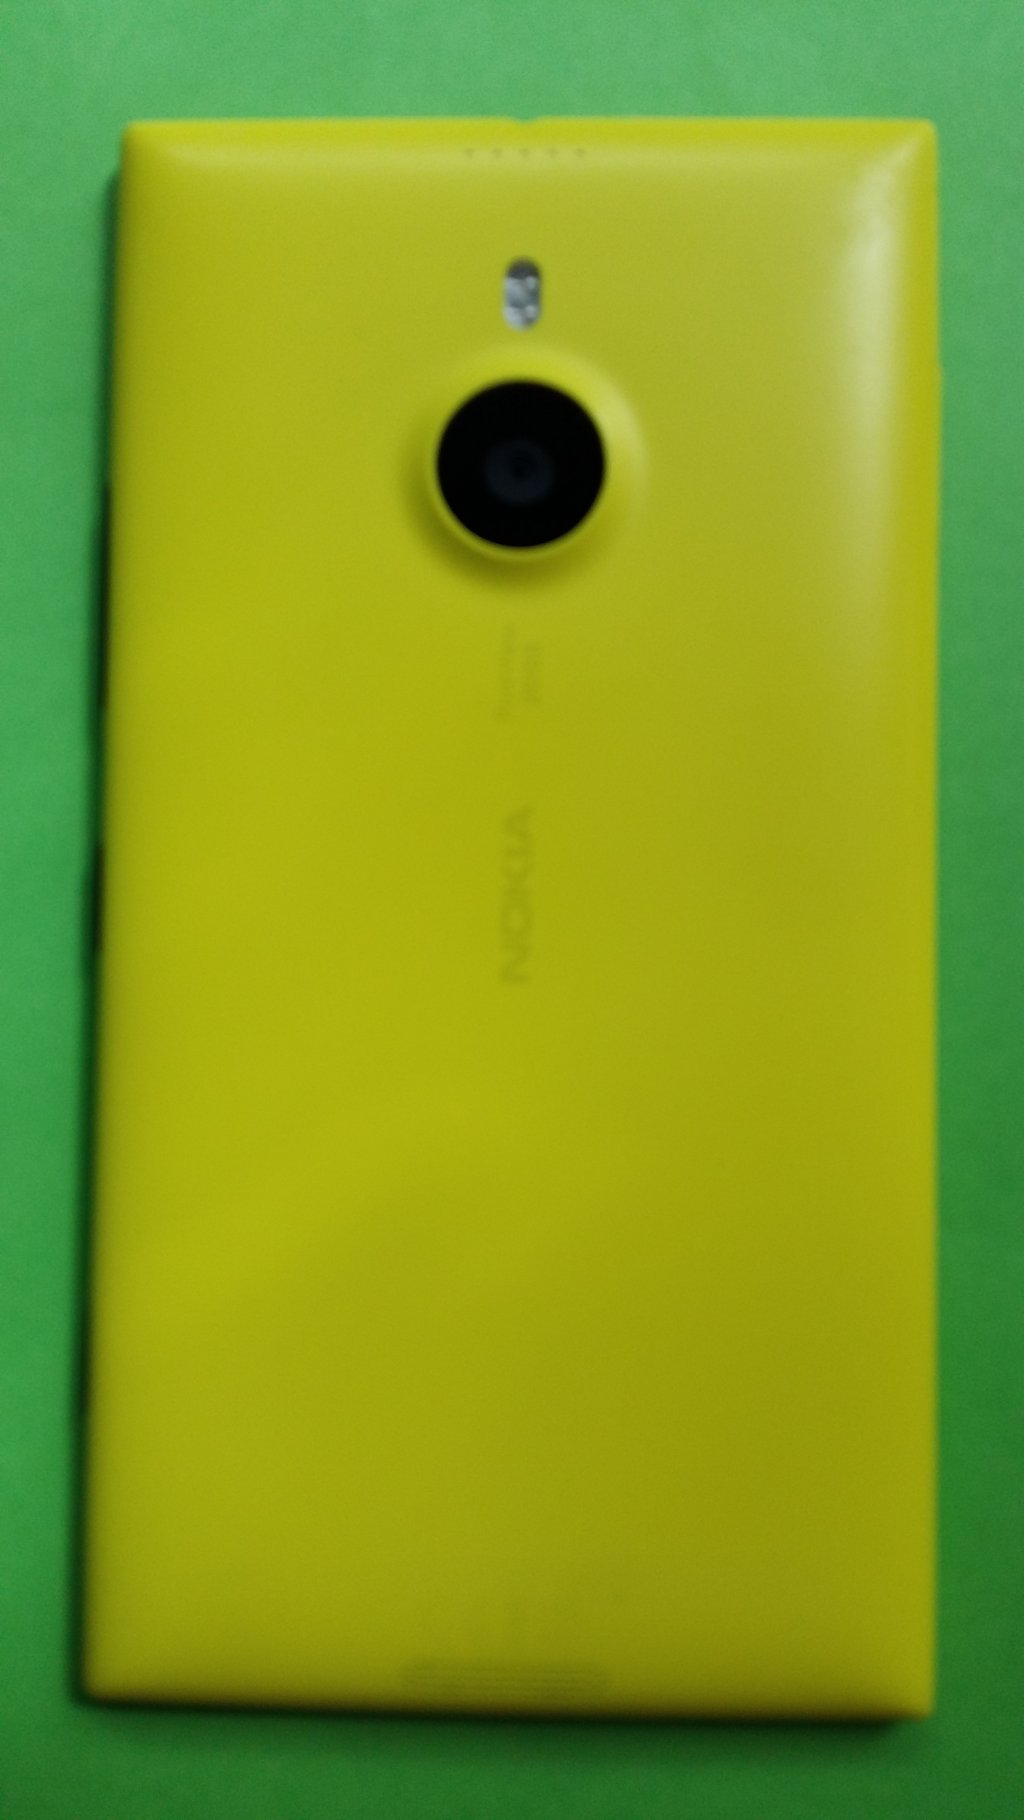 image-8308298-Nokia_1520.1_Lumia_(1)2.w640.jpg